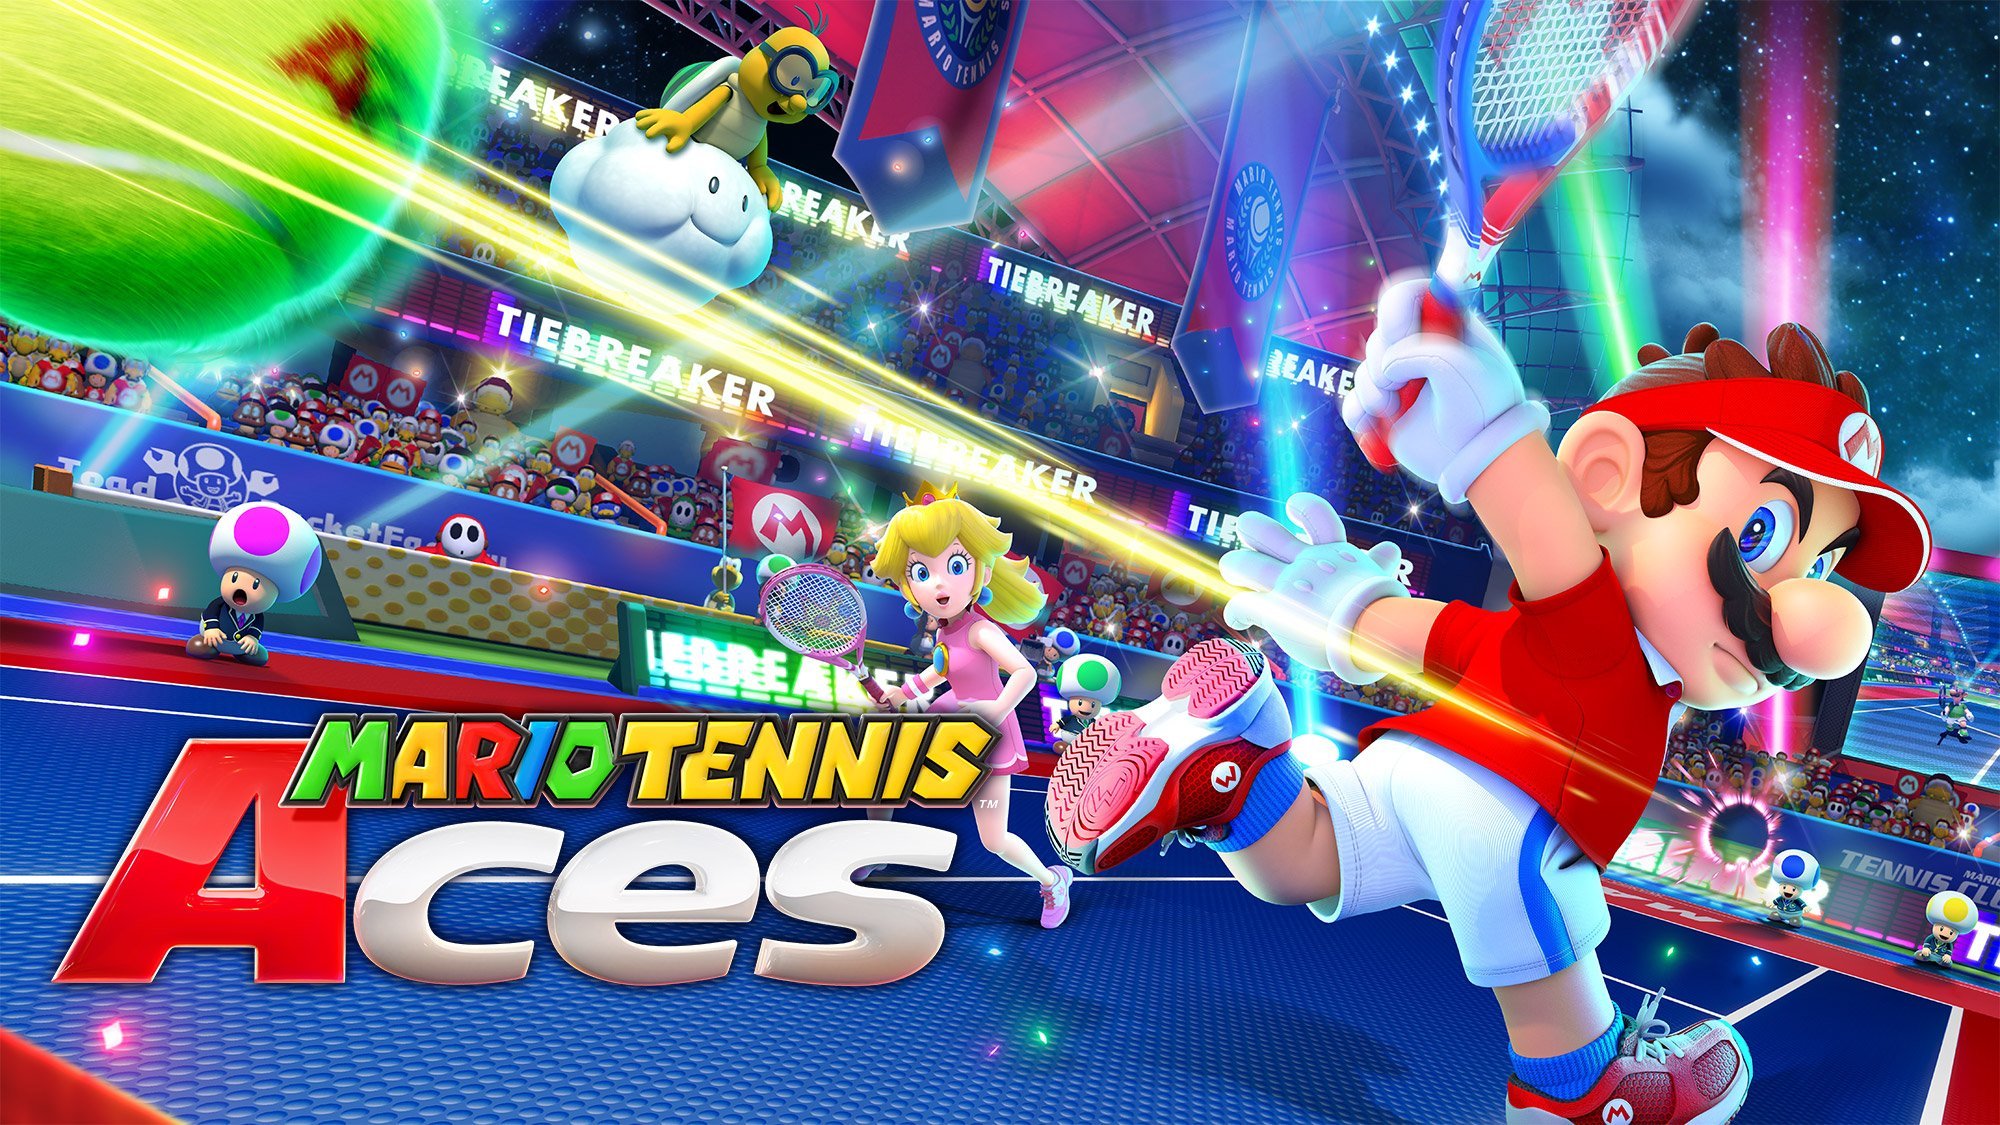 Mario-tennis-aces